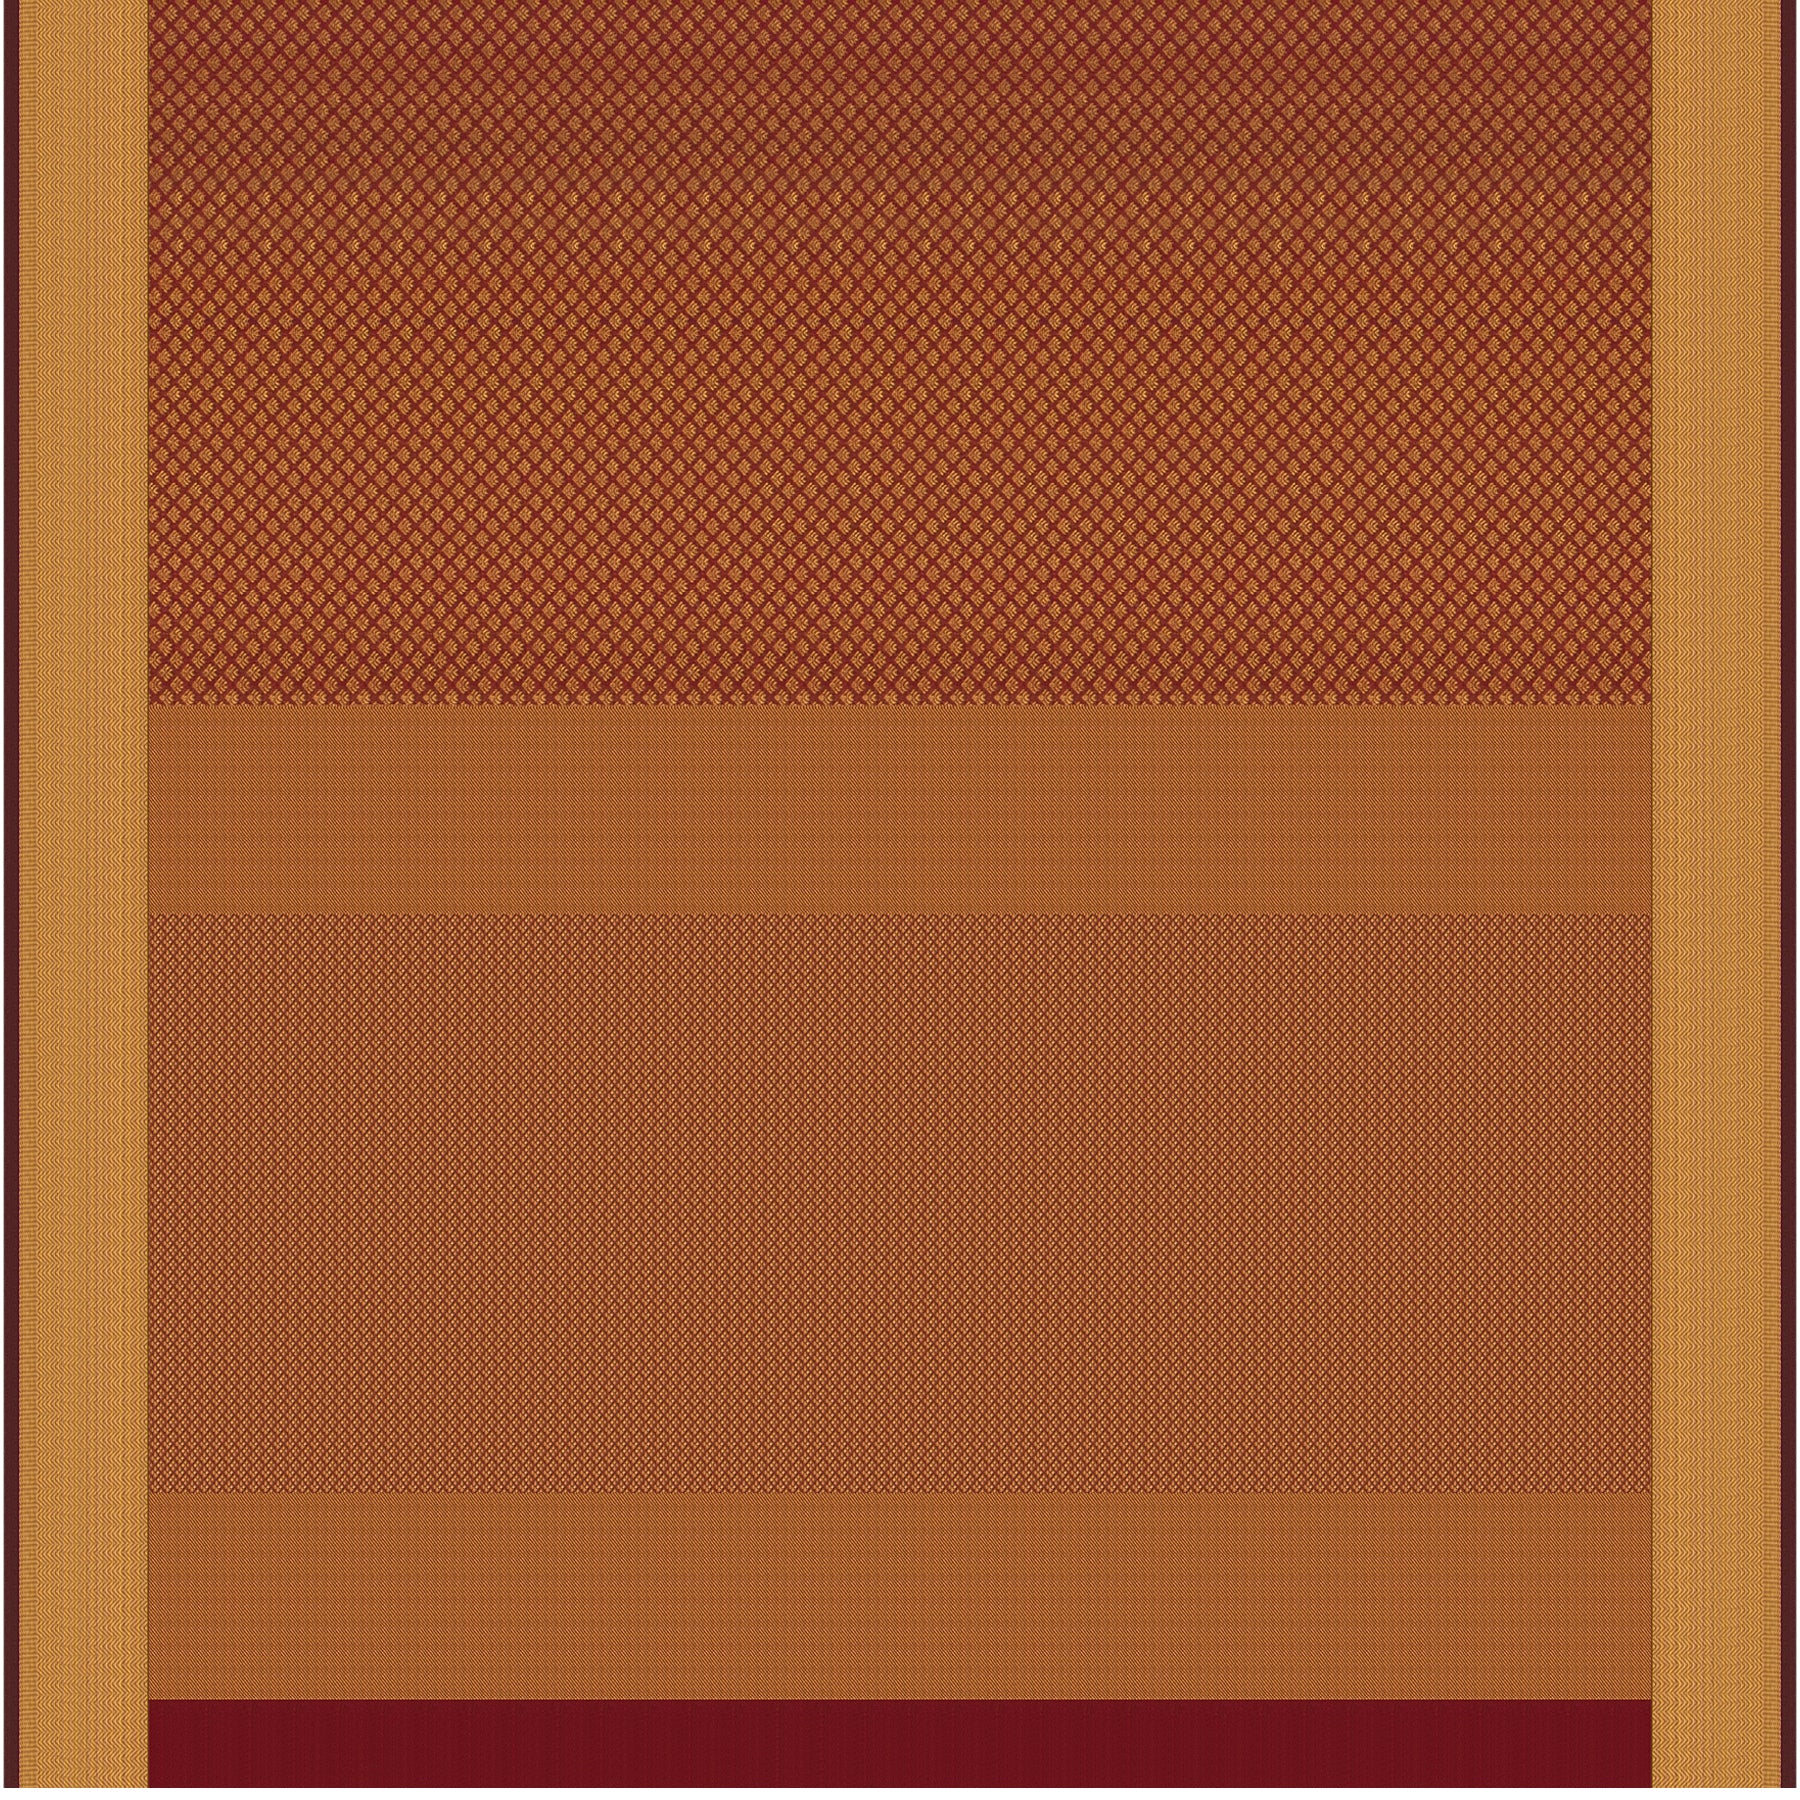 Kanakavalli Kanjivaram Silk Sari 21-599-HS001-07498 - Full View